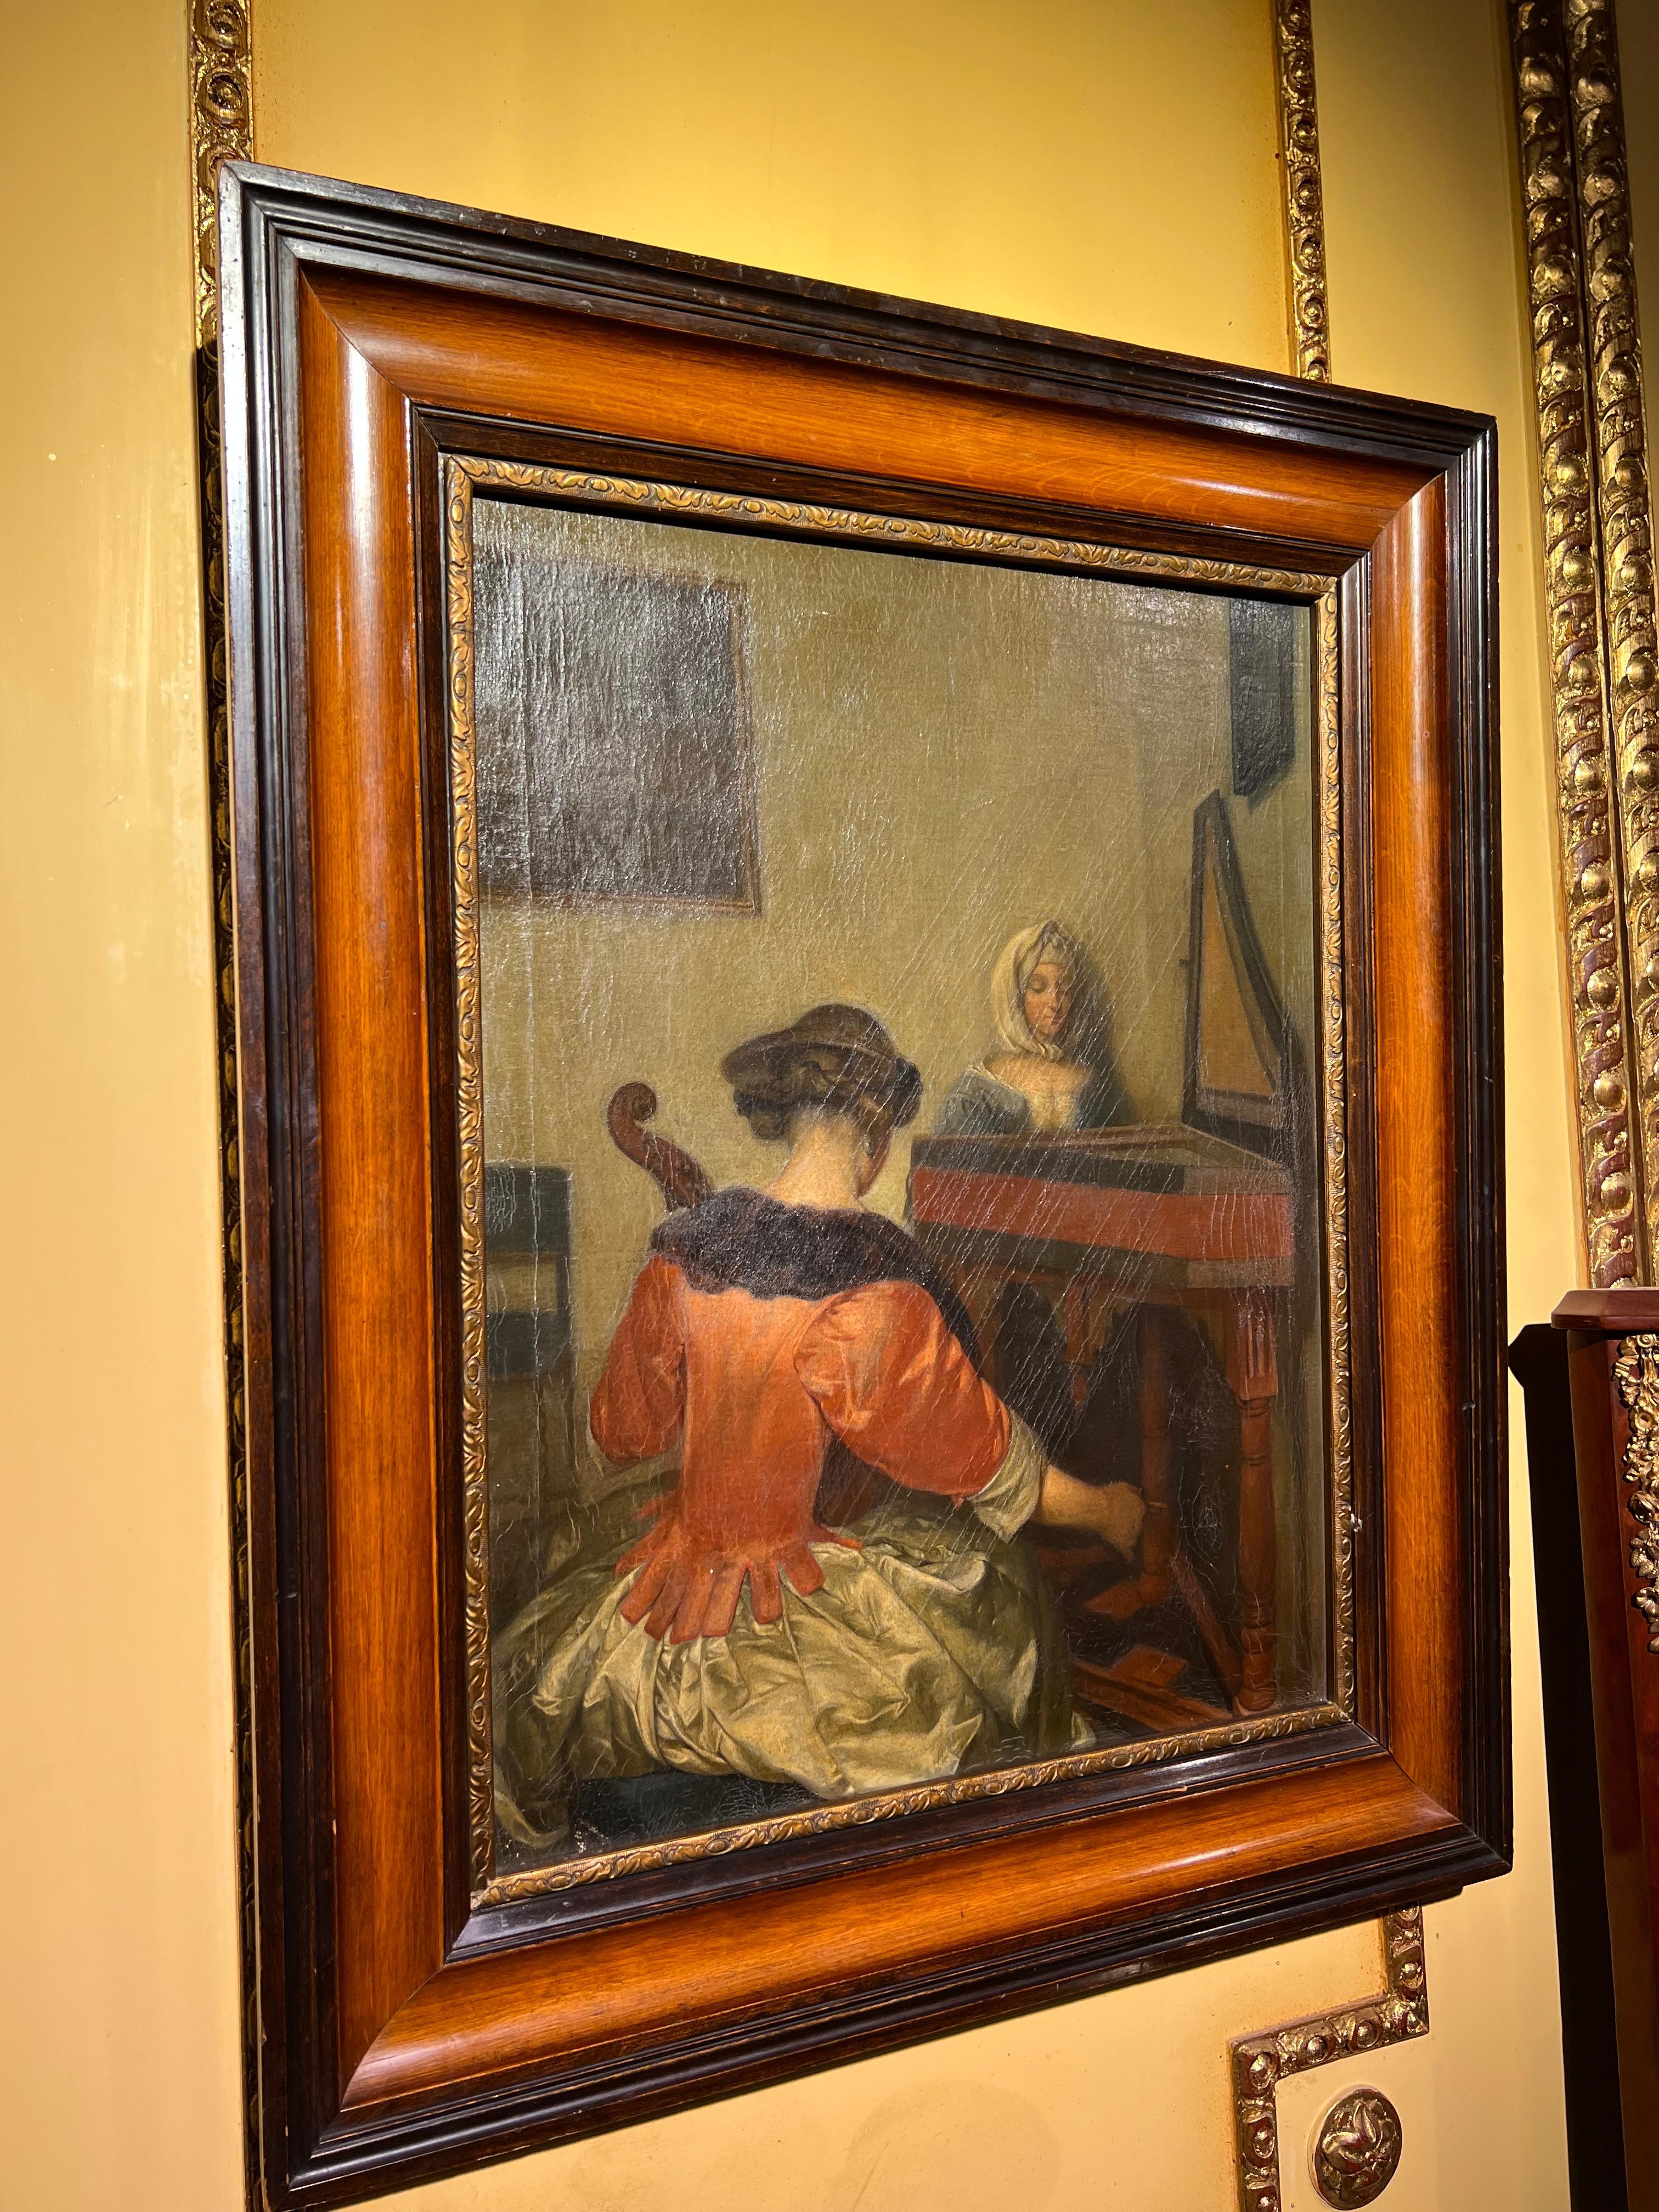 Altes Ölgemälde um 1900 auf Leinwand.
Anonymer Maler Allegorie der Musik mit 2 Mädchen, die am Cello und Klavier sitzen.